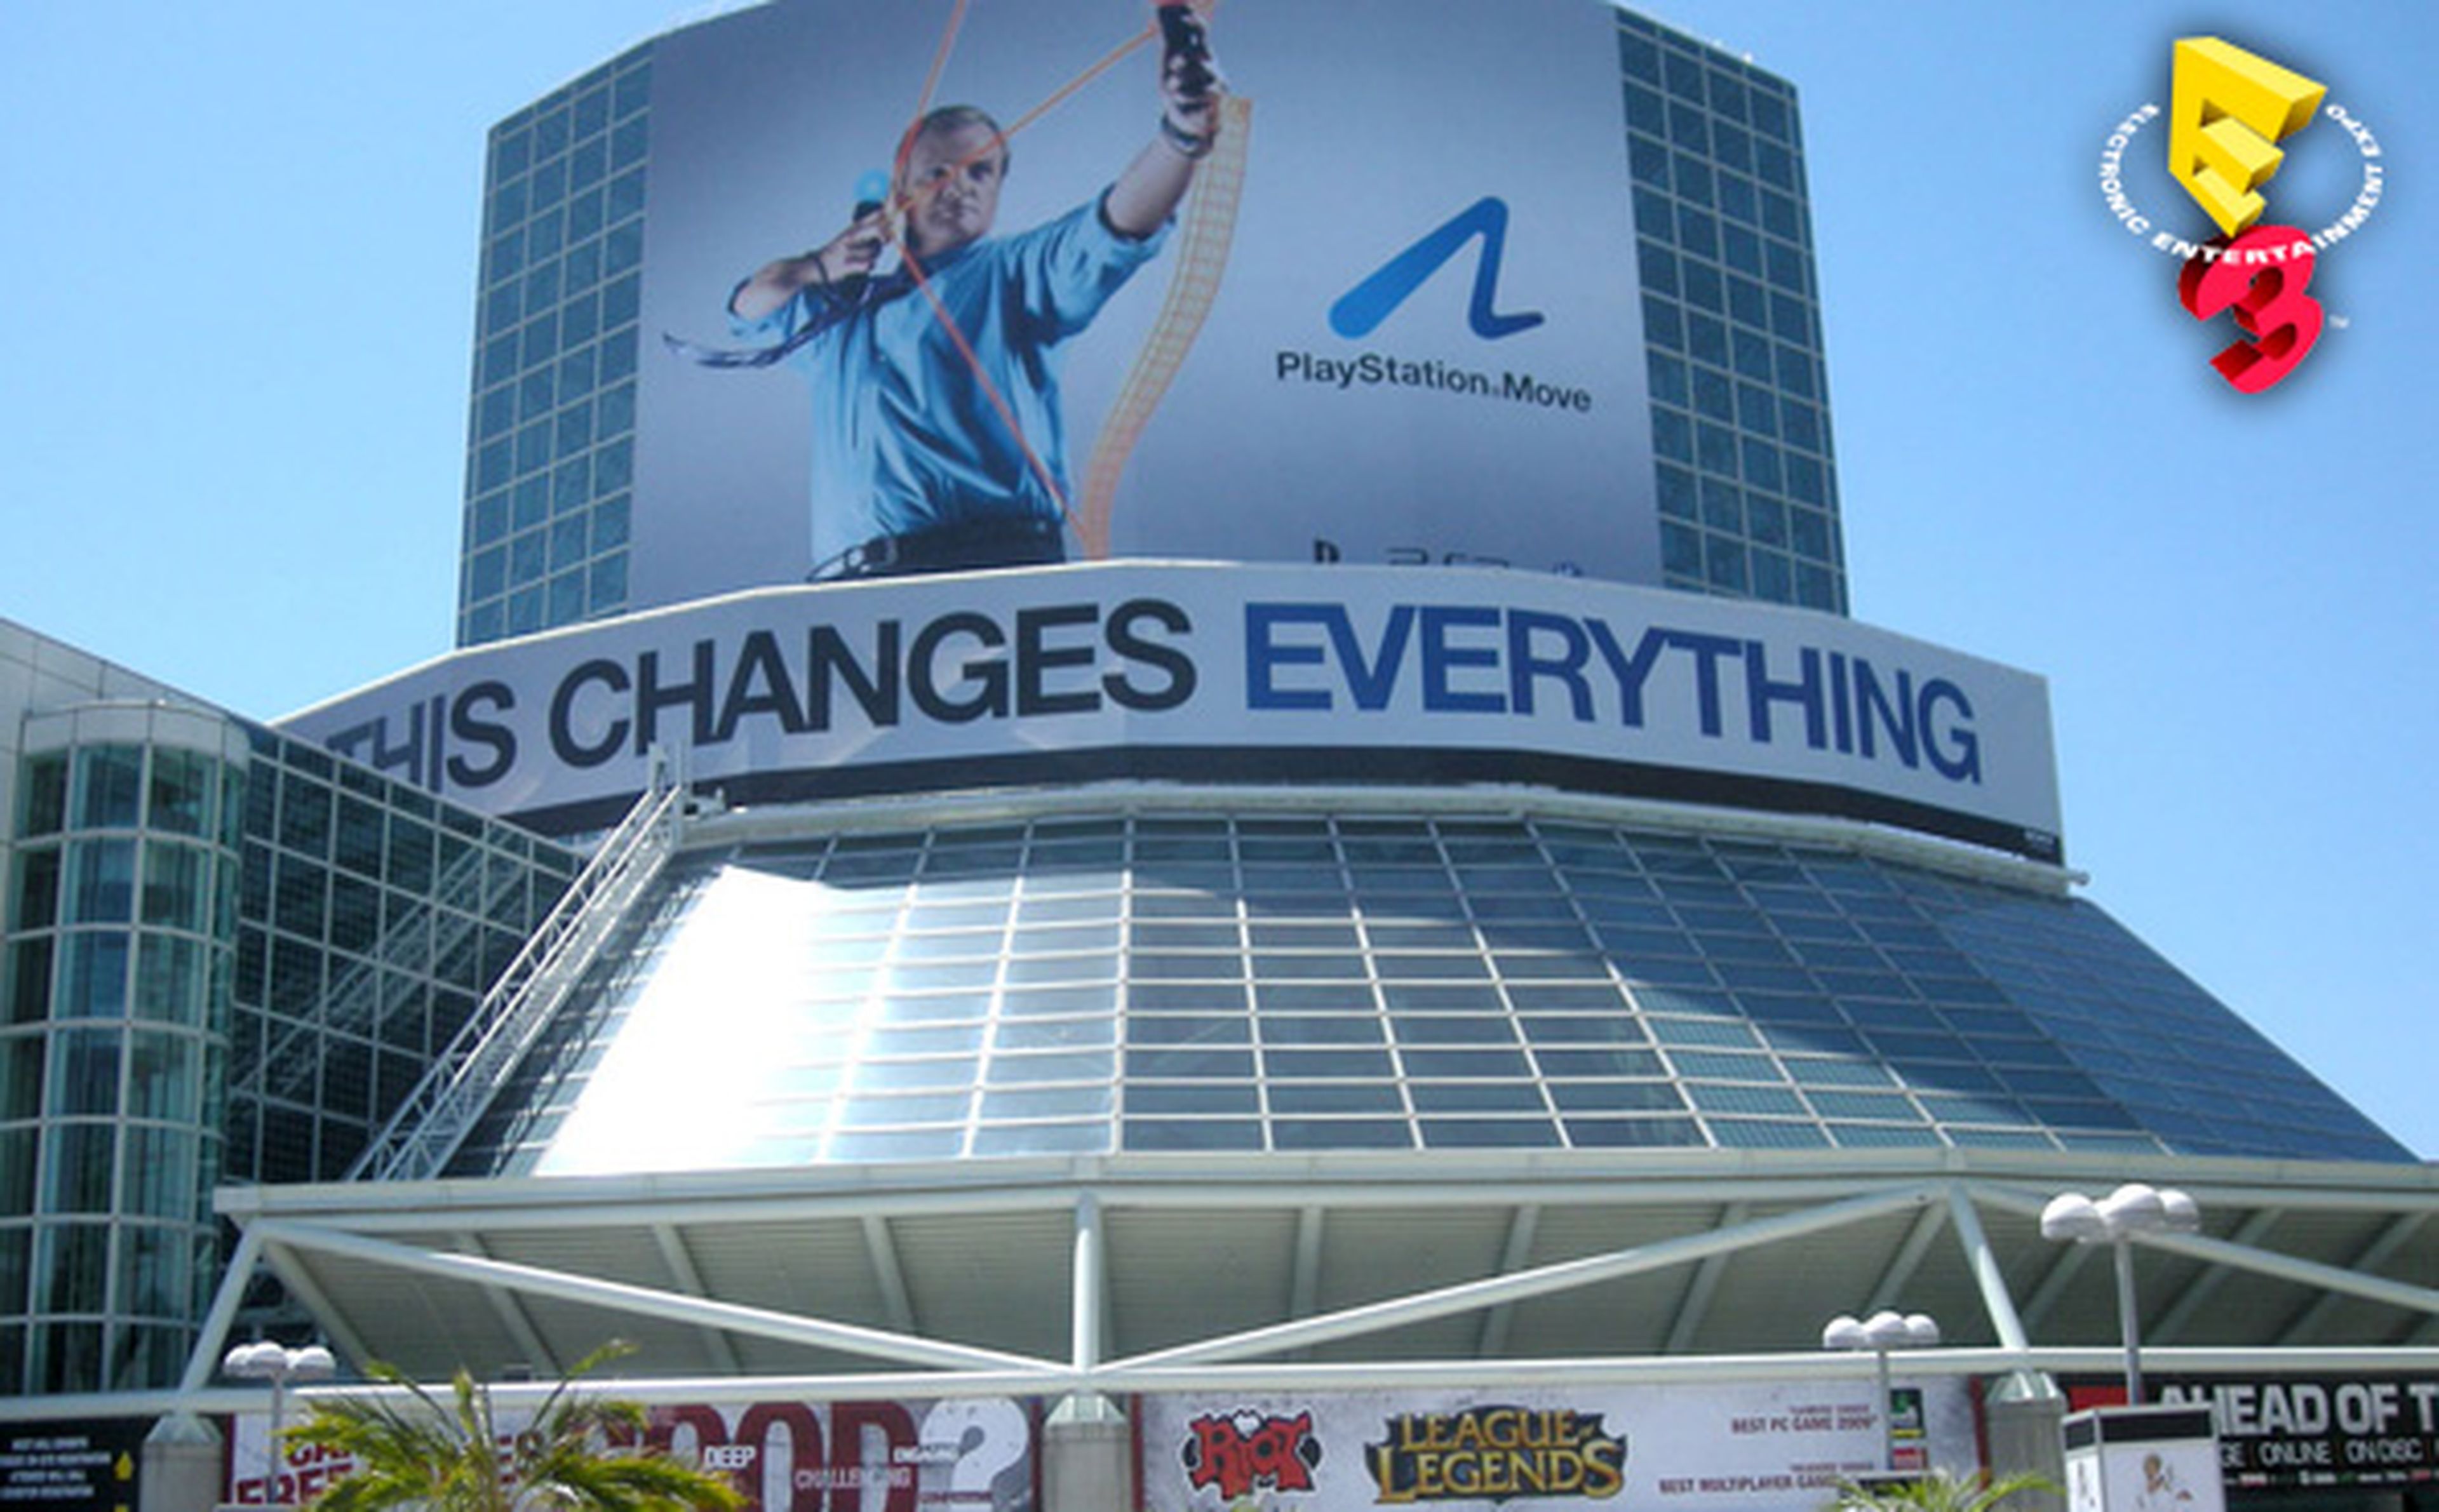 El E3 2010 de Los Ángeles en fotos